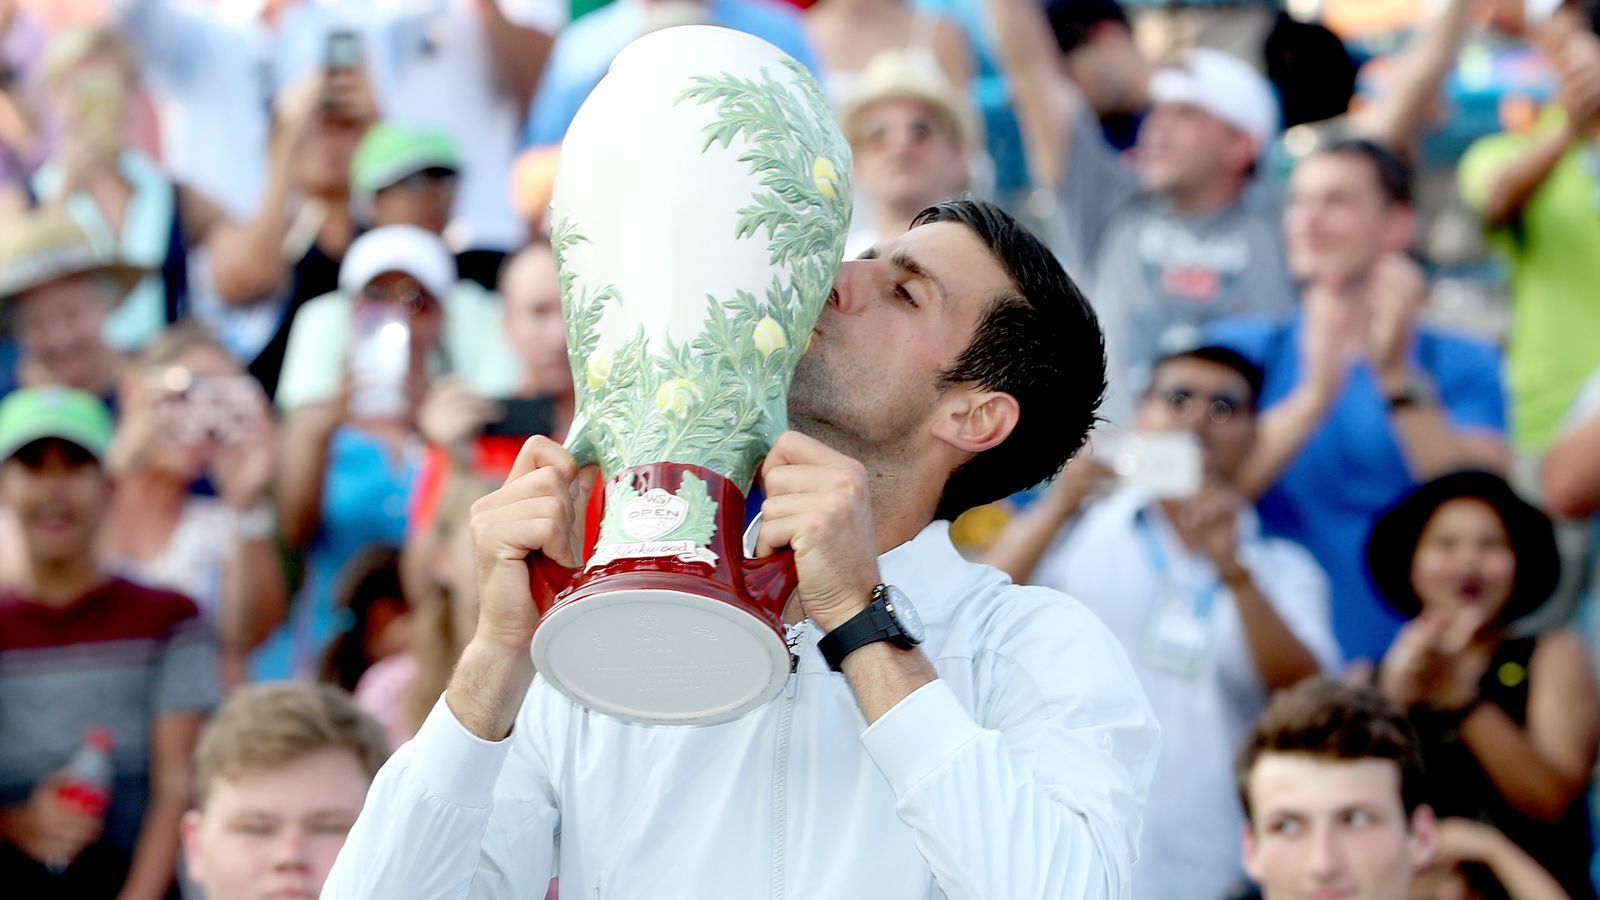 Novak Djokovic beats Roger Federer in Cincinnati final to complete